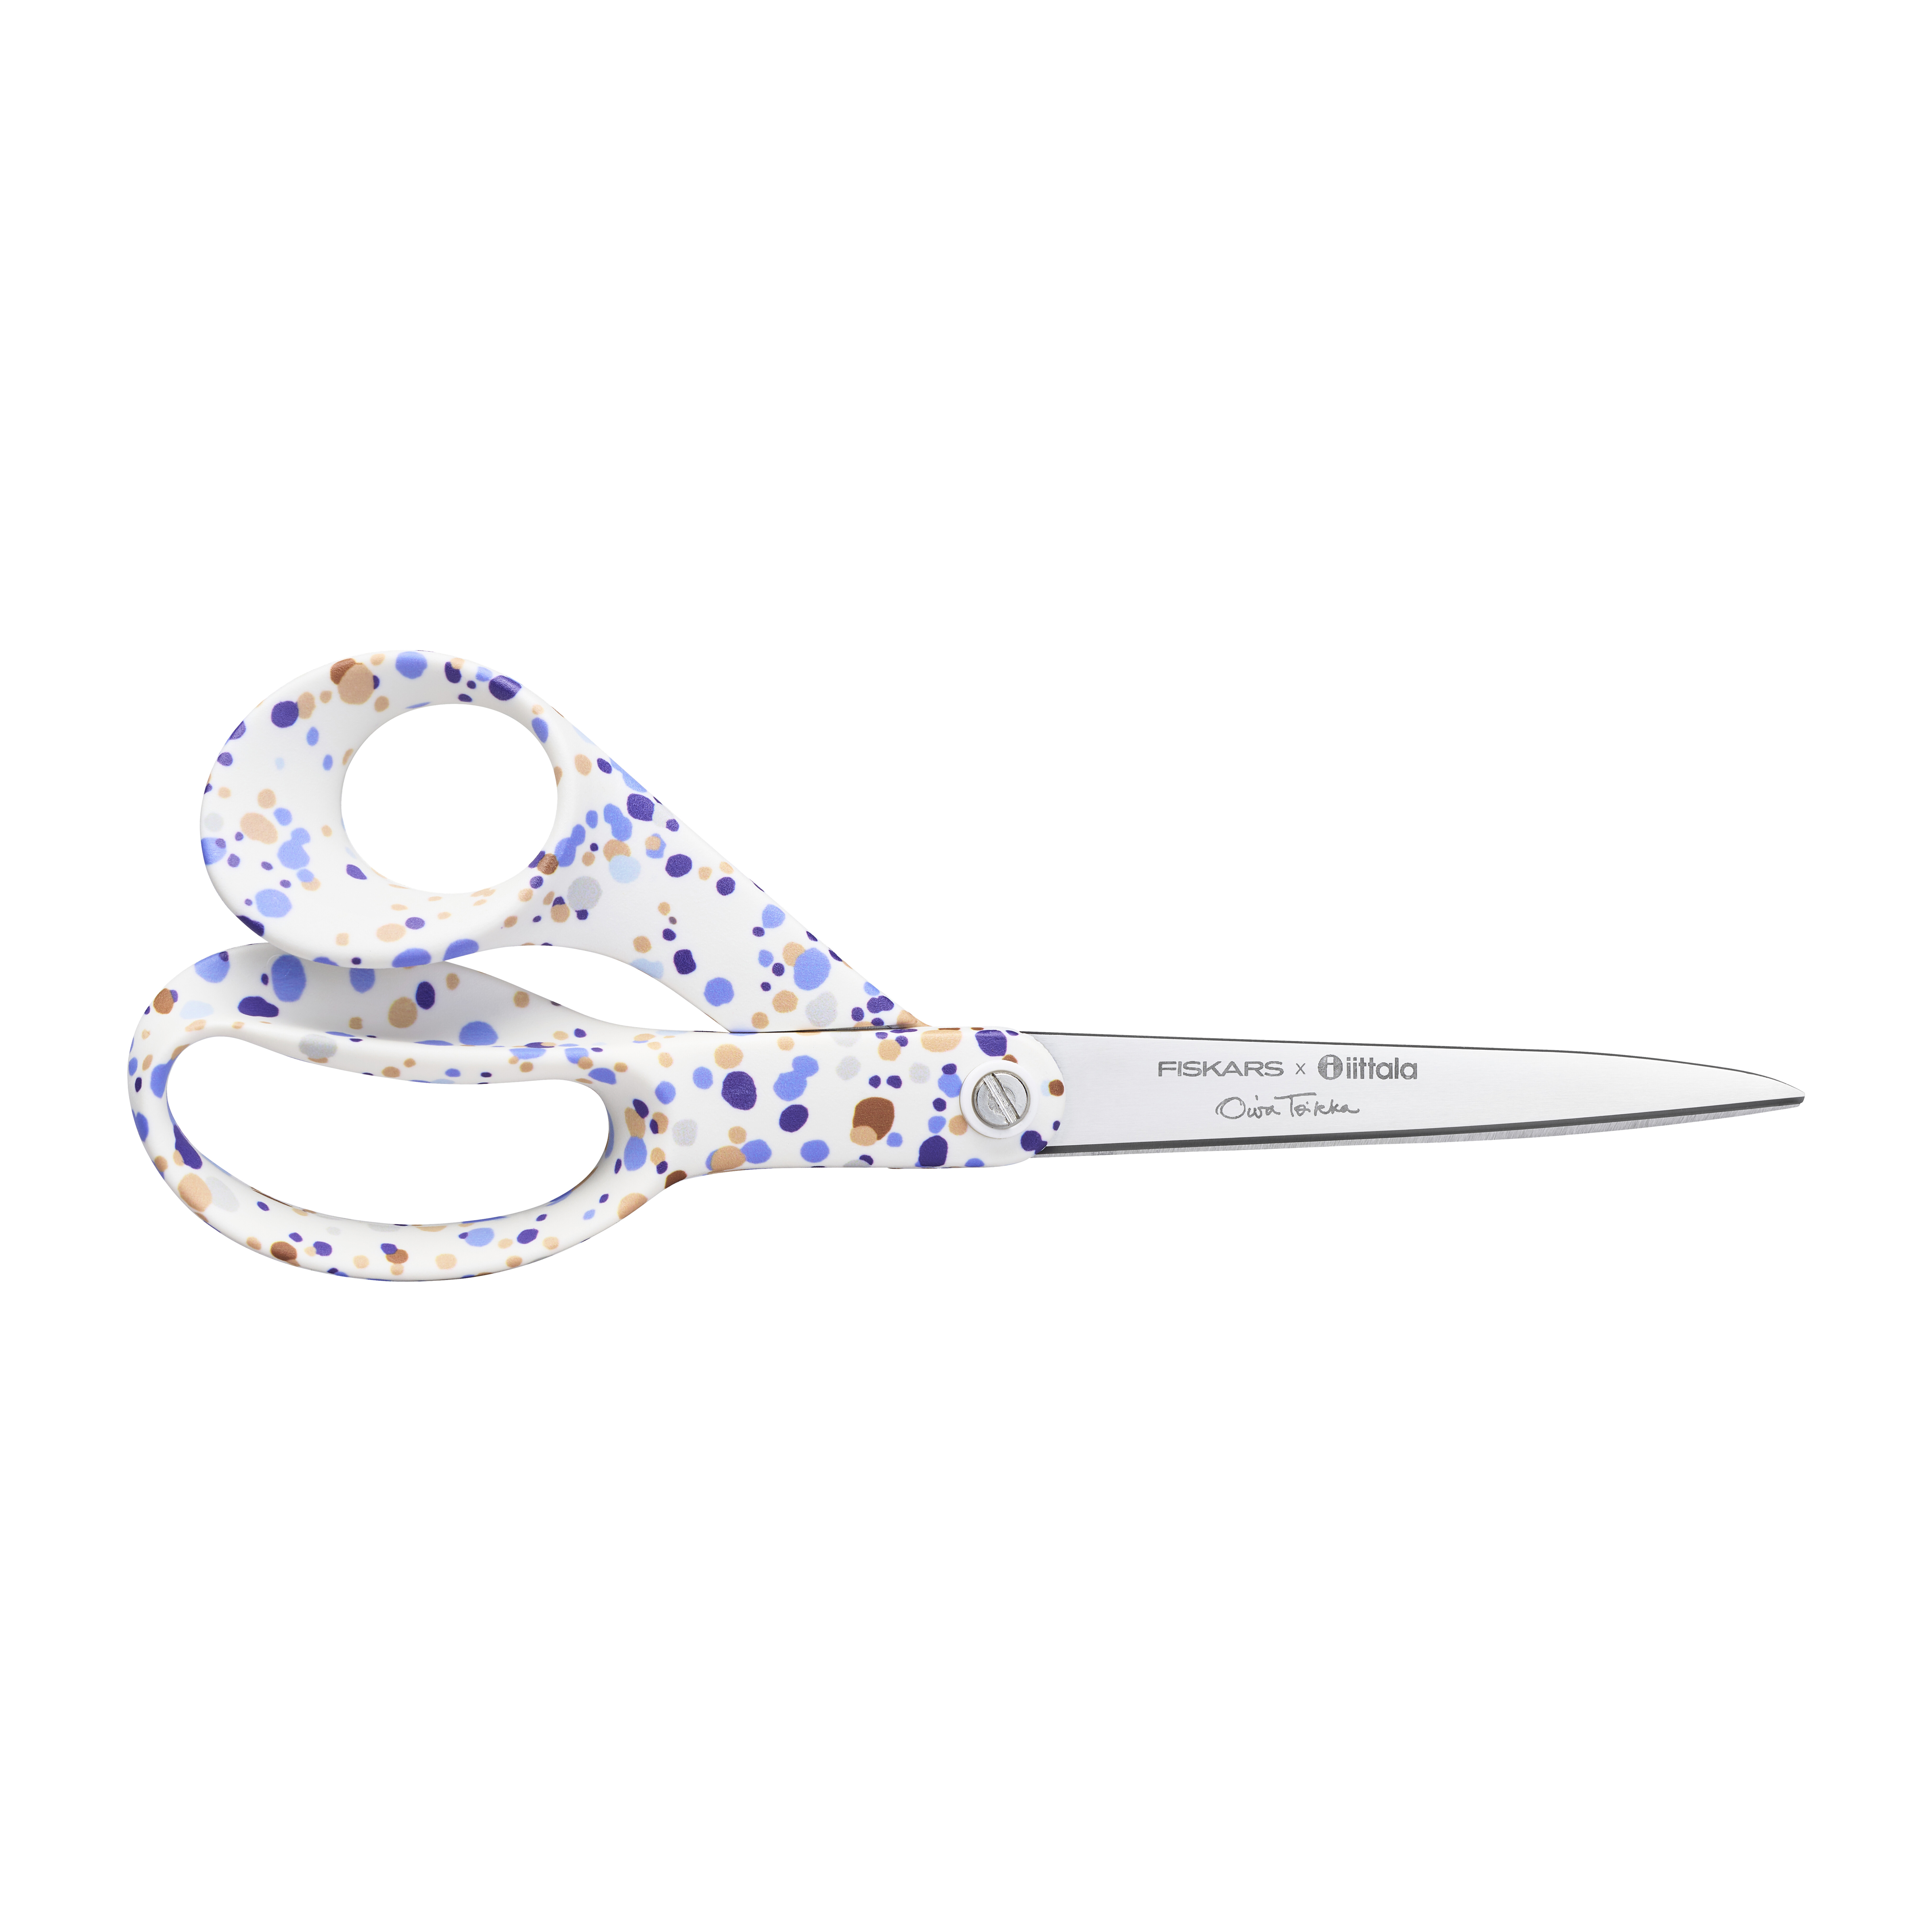 Fiskars x Iittala universal scissors 21 cm, Helle blue